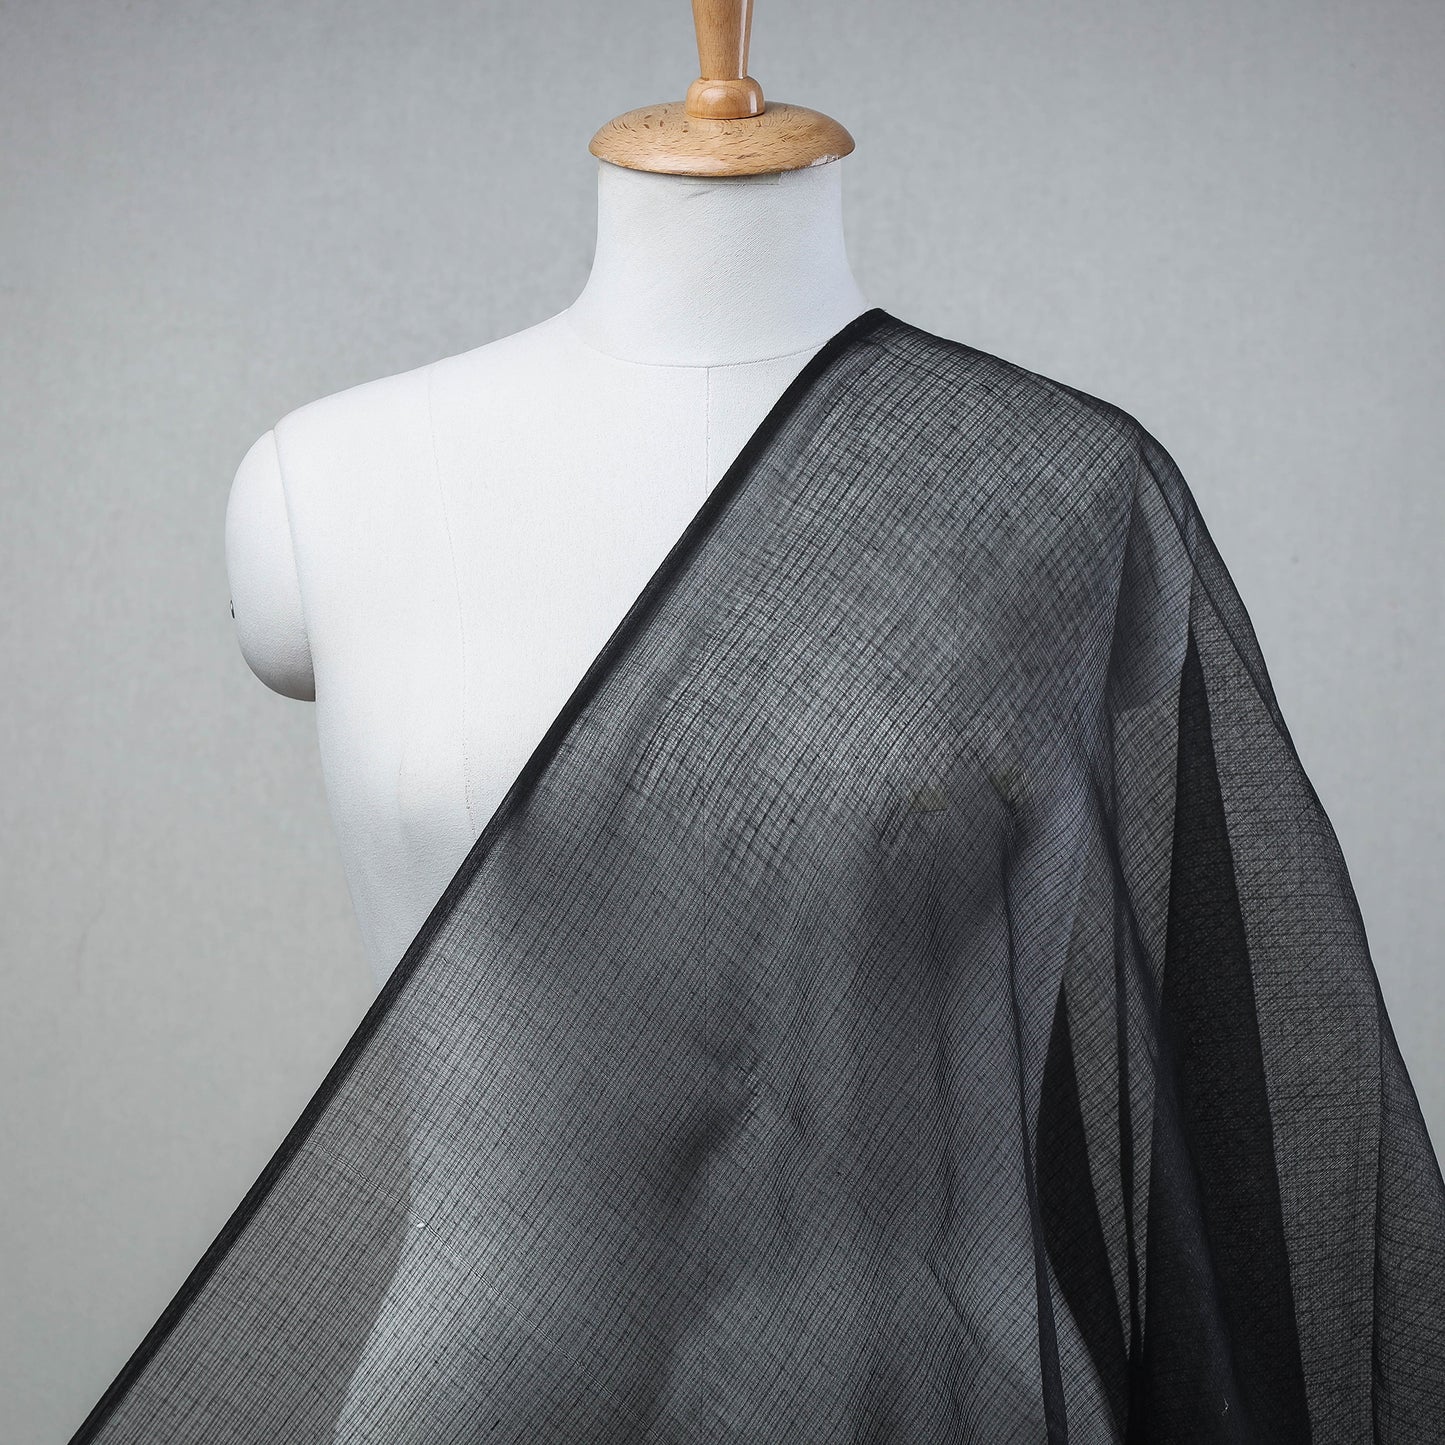 Black - Kota Doria Weaving Plain Cotton Fabric 13